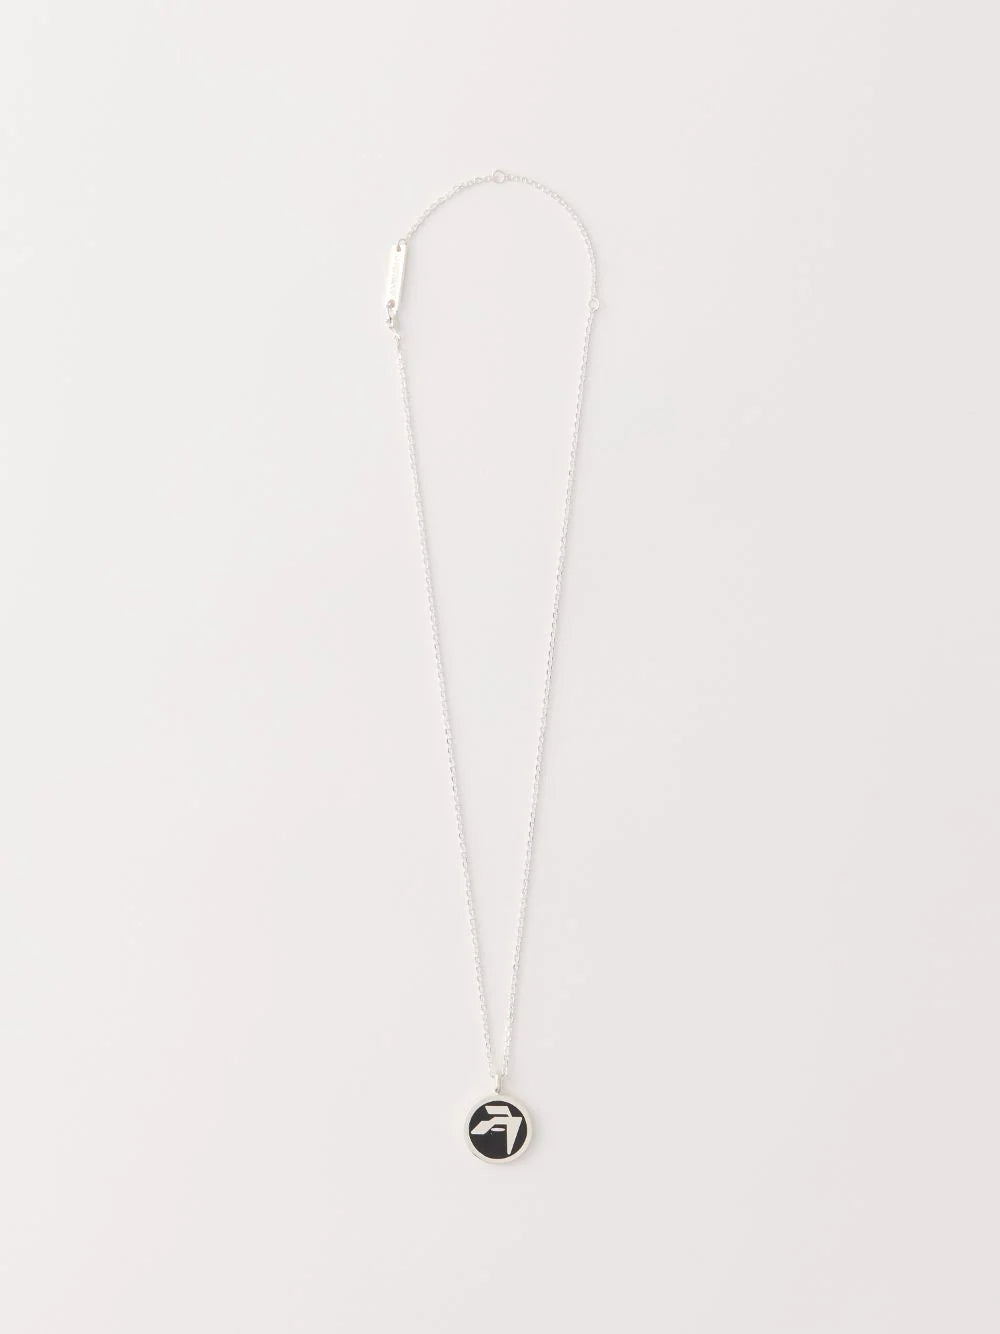 AMBUSH Epoxy Amblem Charm Necklace - Silver